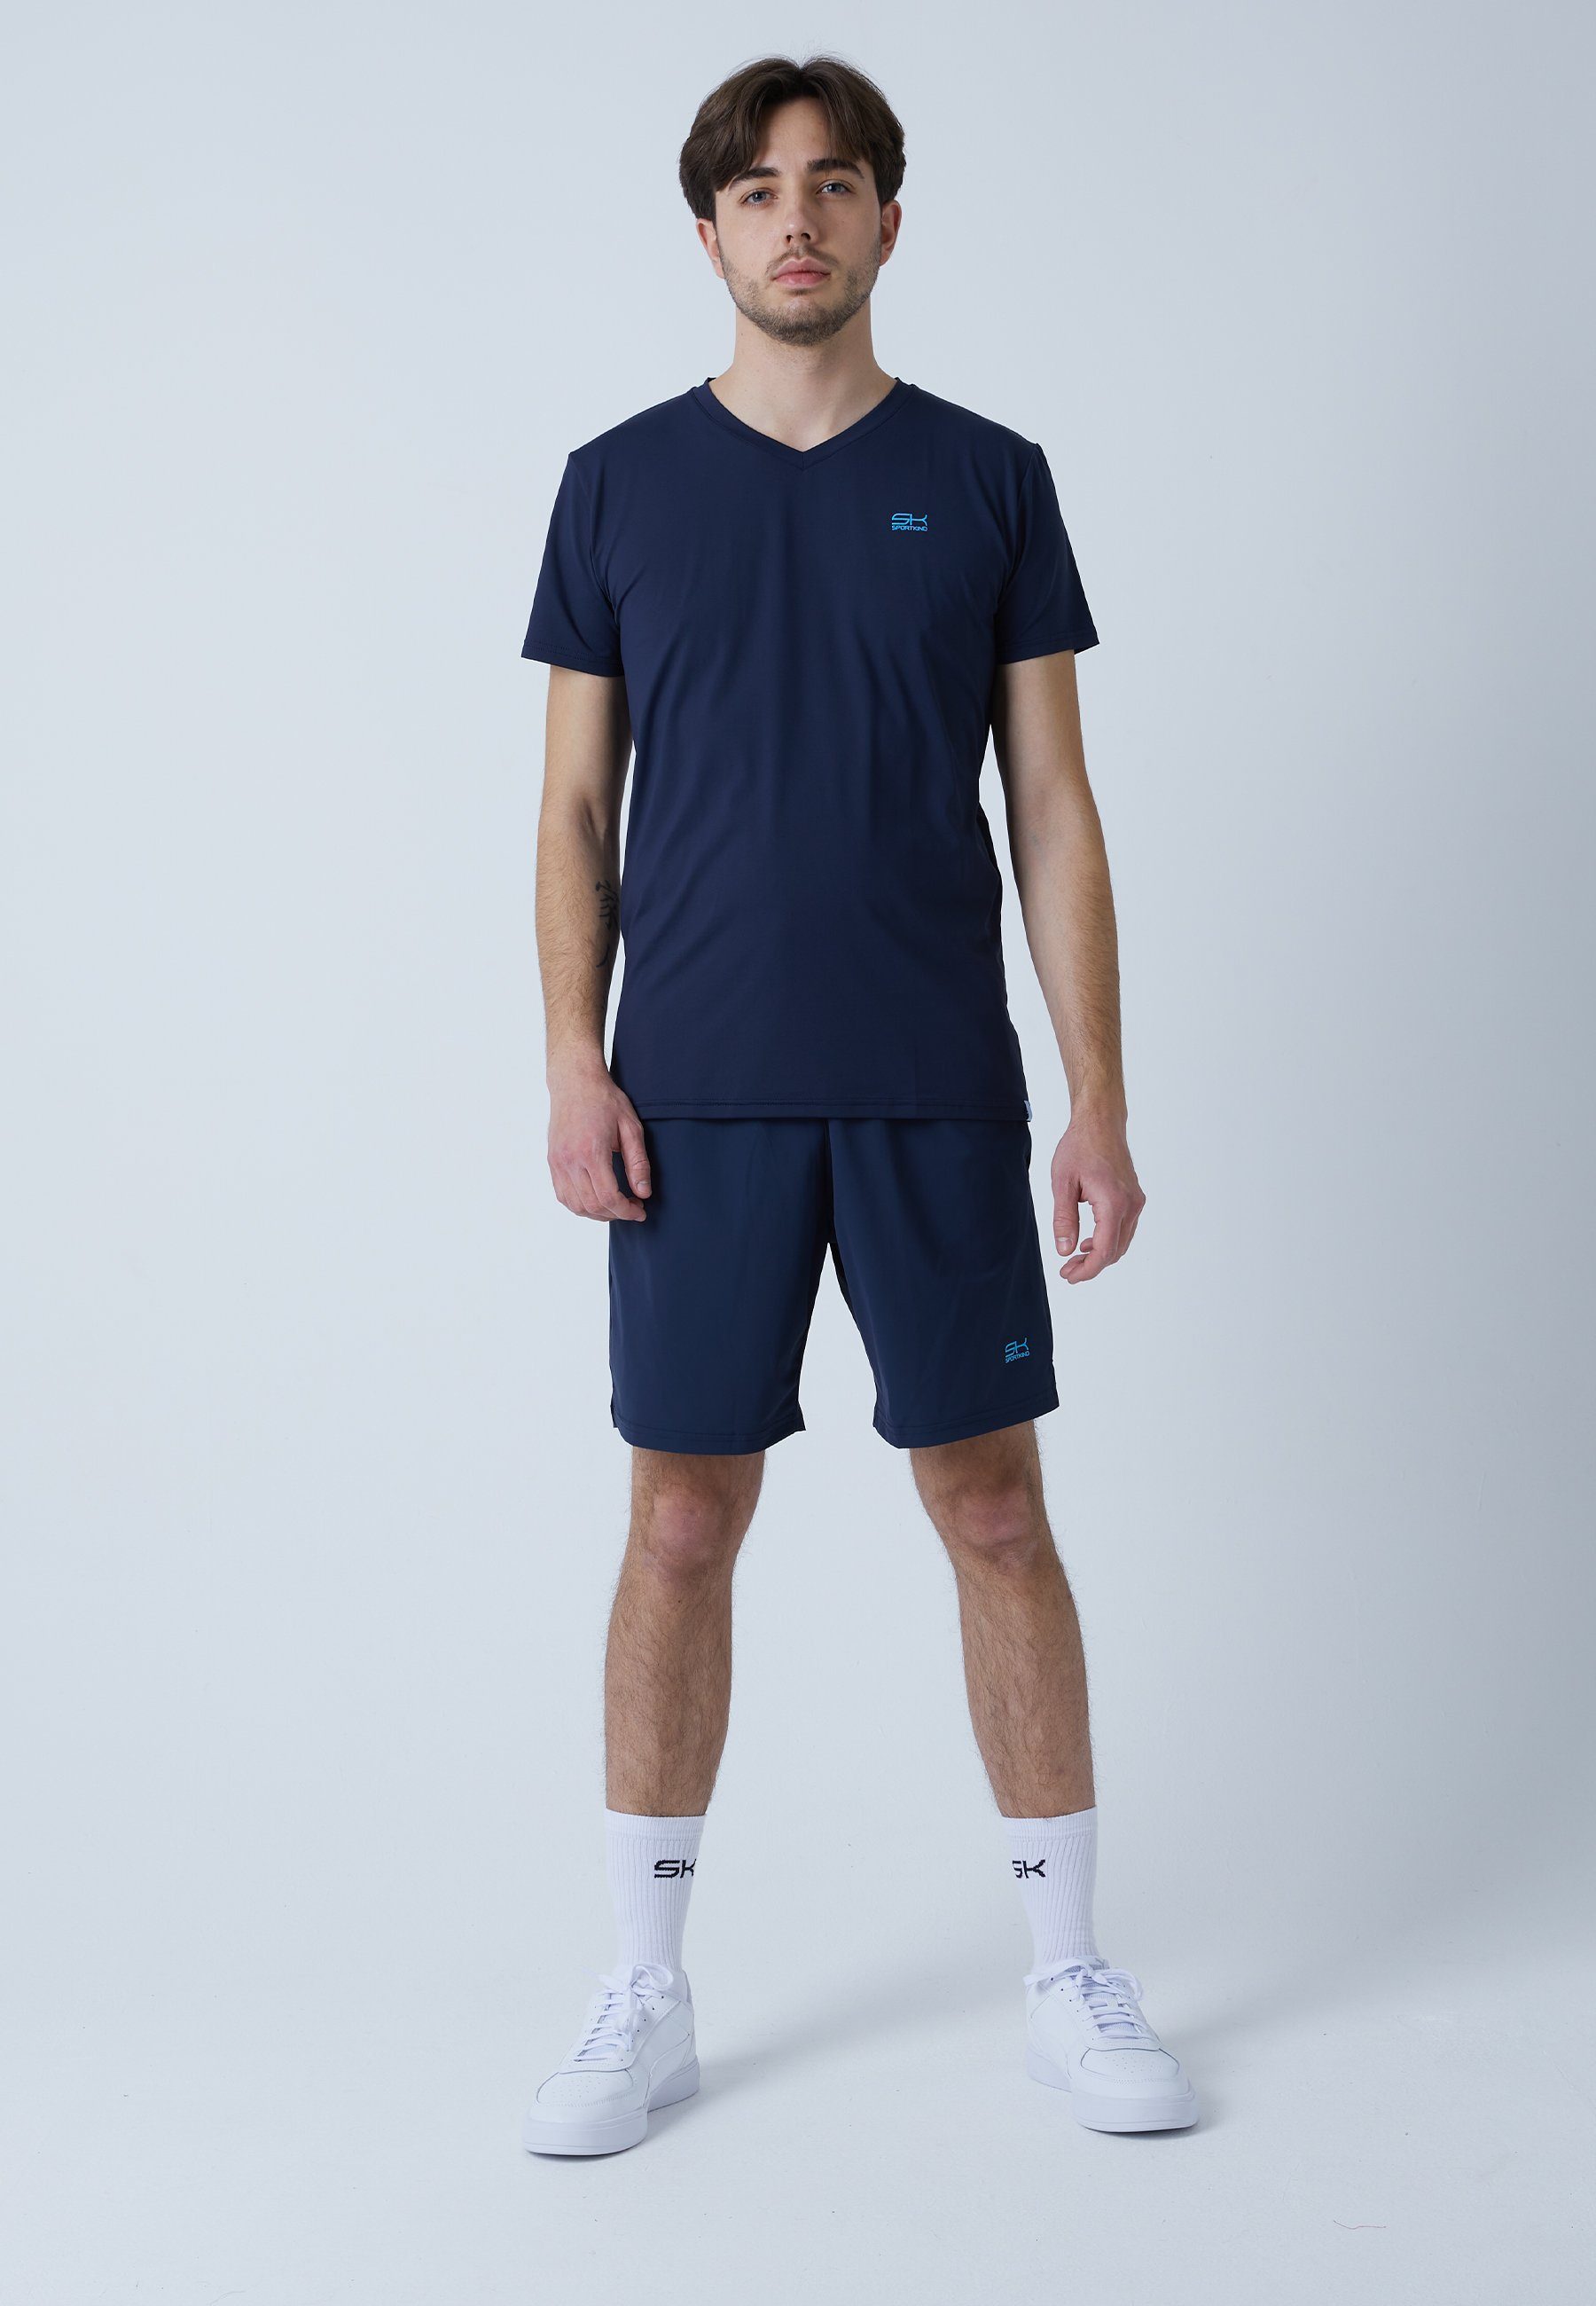 Tennis SPORTKIND Funktionsshirt V-Ausschnitt Herren & navy T-Shirt blau Jungen